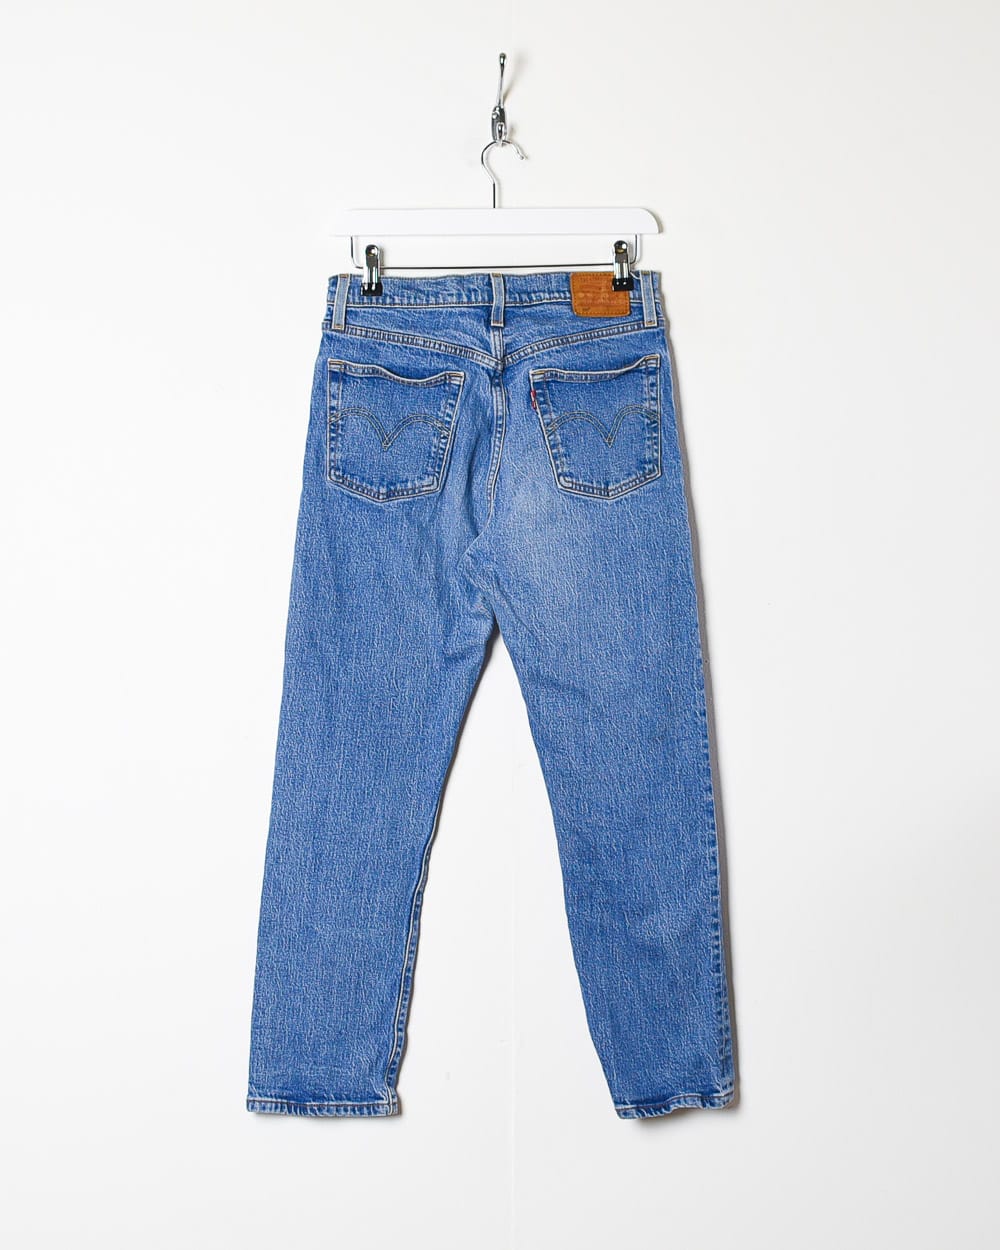 Blue Levi's 501 Jeans - W30 L26